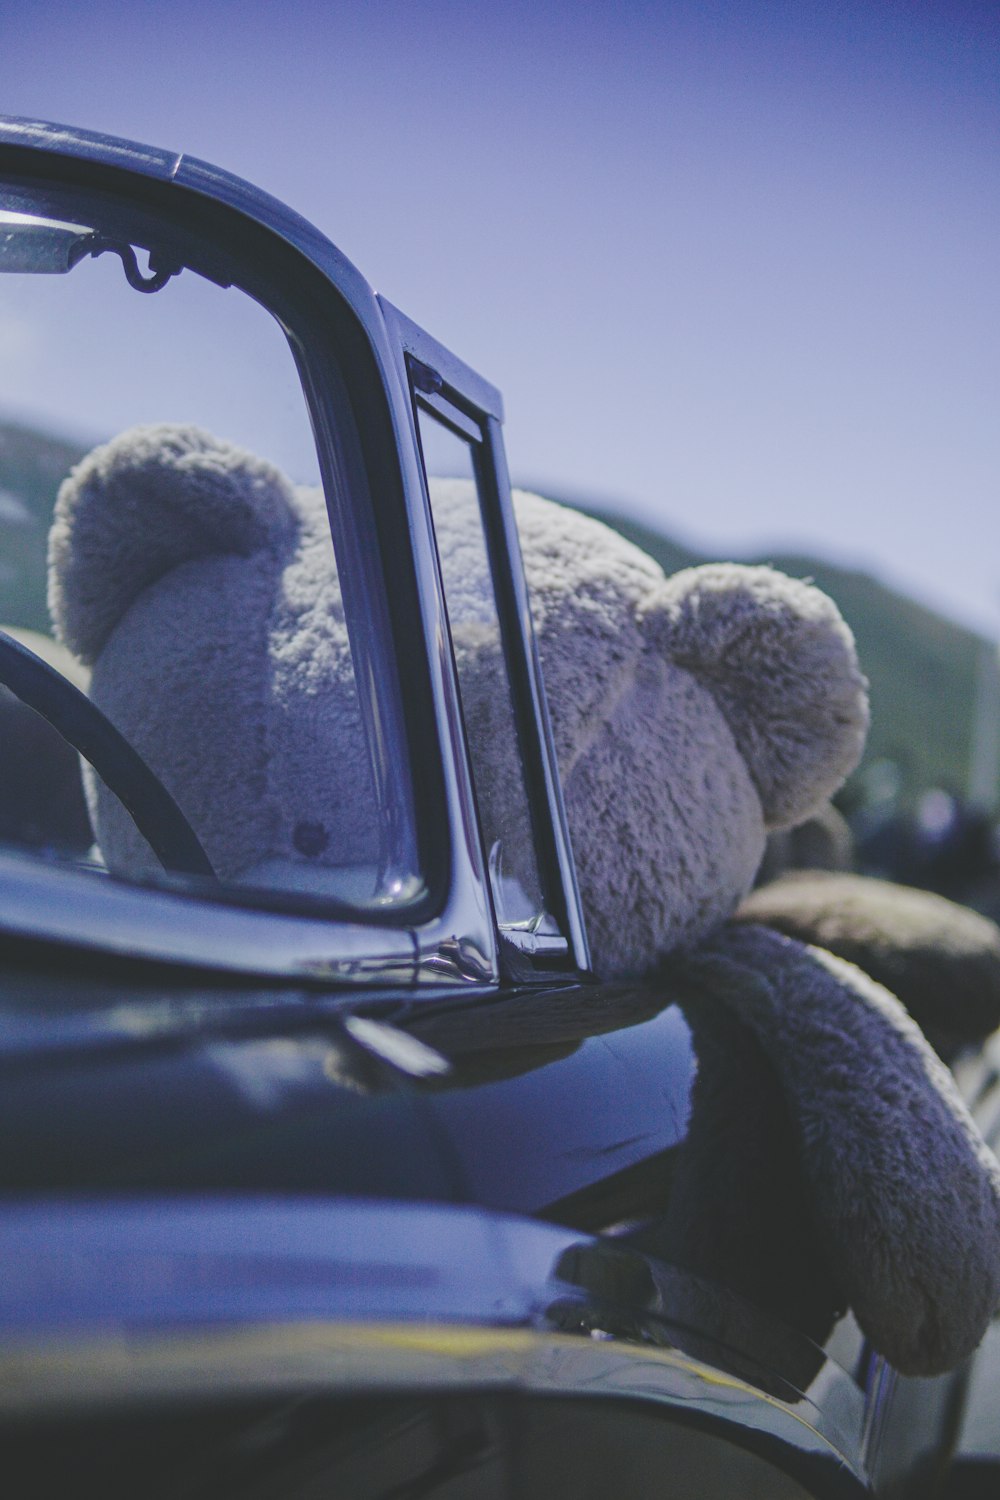 brinquedo de pelúcia do urso marrom em tamanho real dentro do carro preto